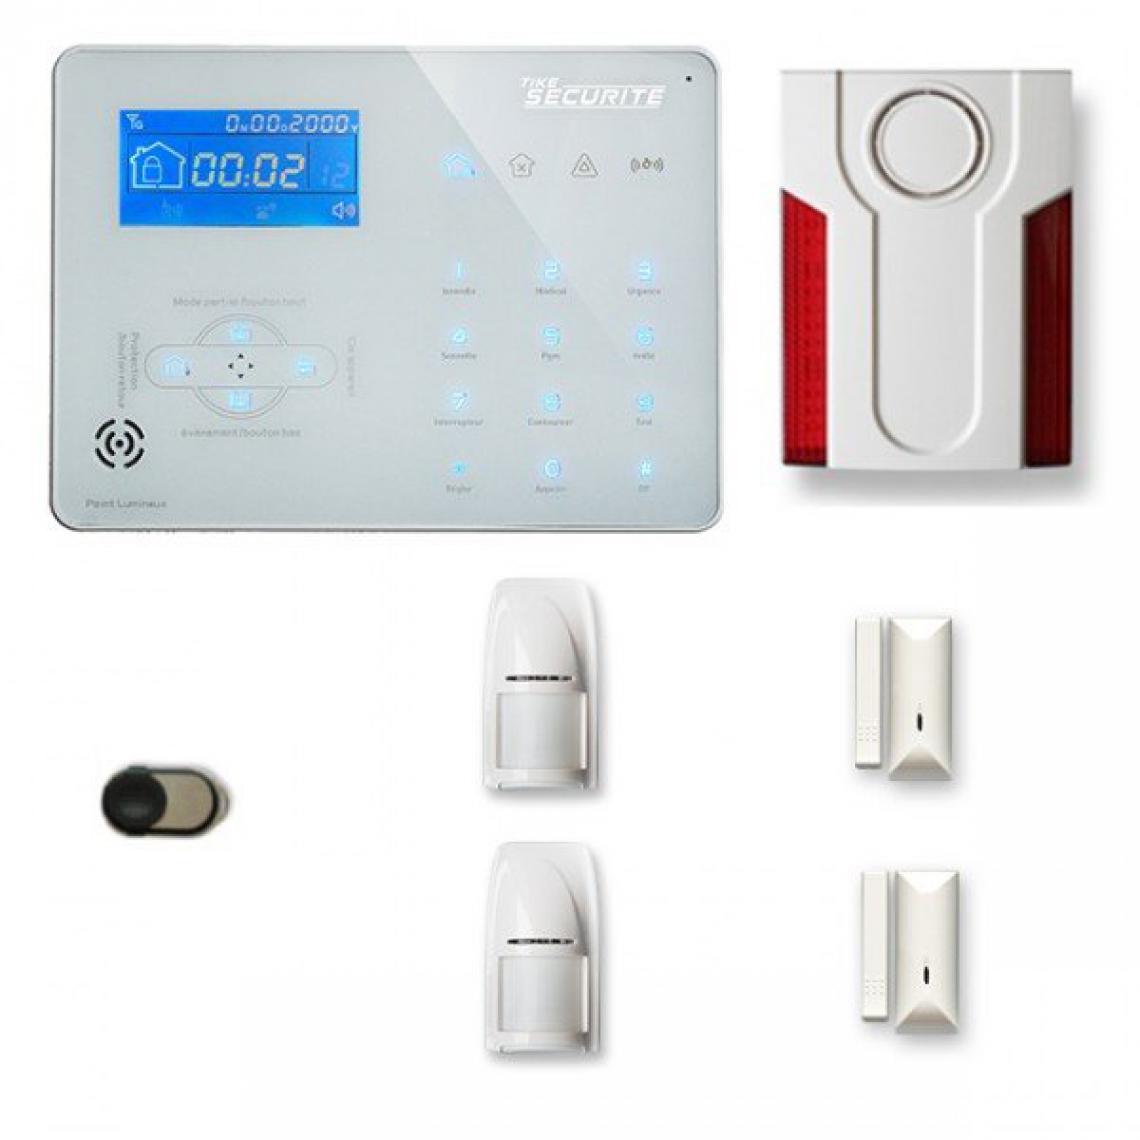 Tike Securite - Alarme maison sans fil ICE-B29 Compatible Box internet et GSM - Alarme connectée